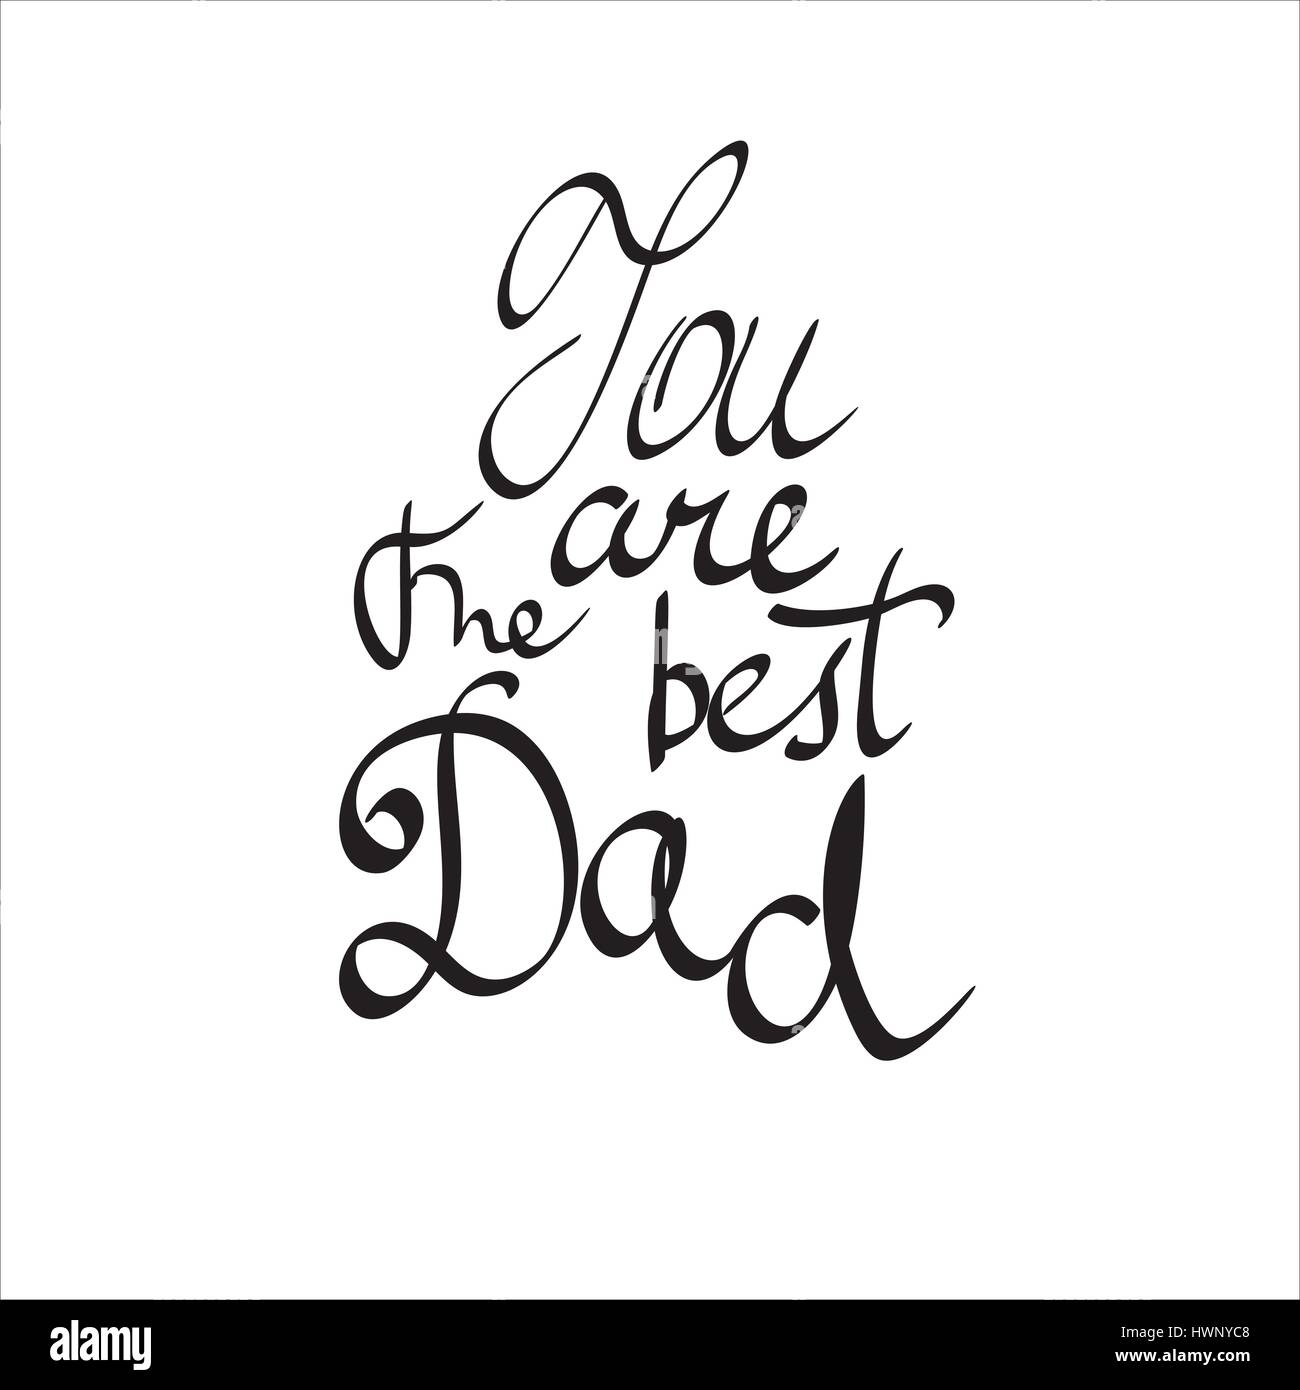 Du bist der beste Vater. Vektor handschriftlichen Beschriftung, T-shirt-print-Design, typografische Komposition isoliert auf weißem Hintergrund. Stock Vektor